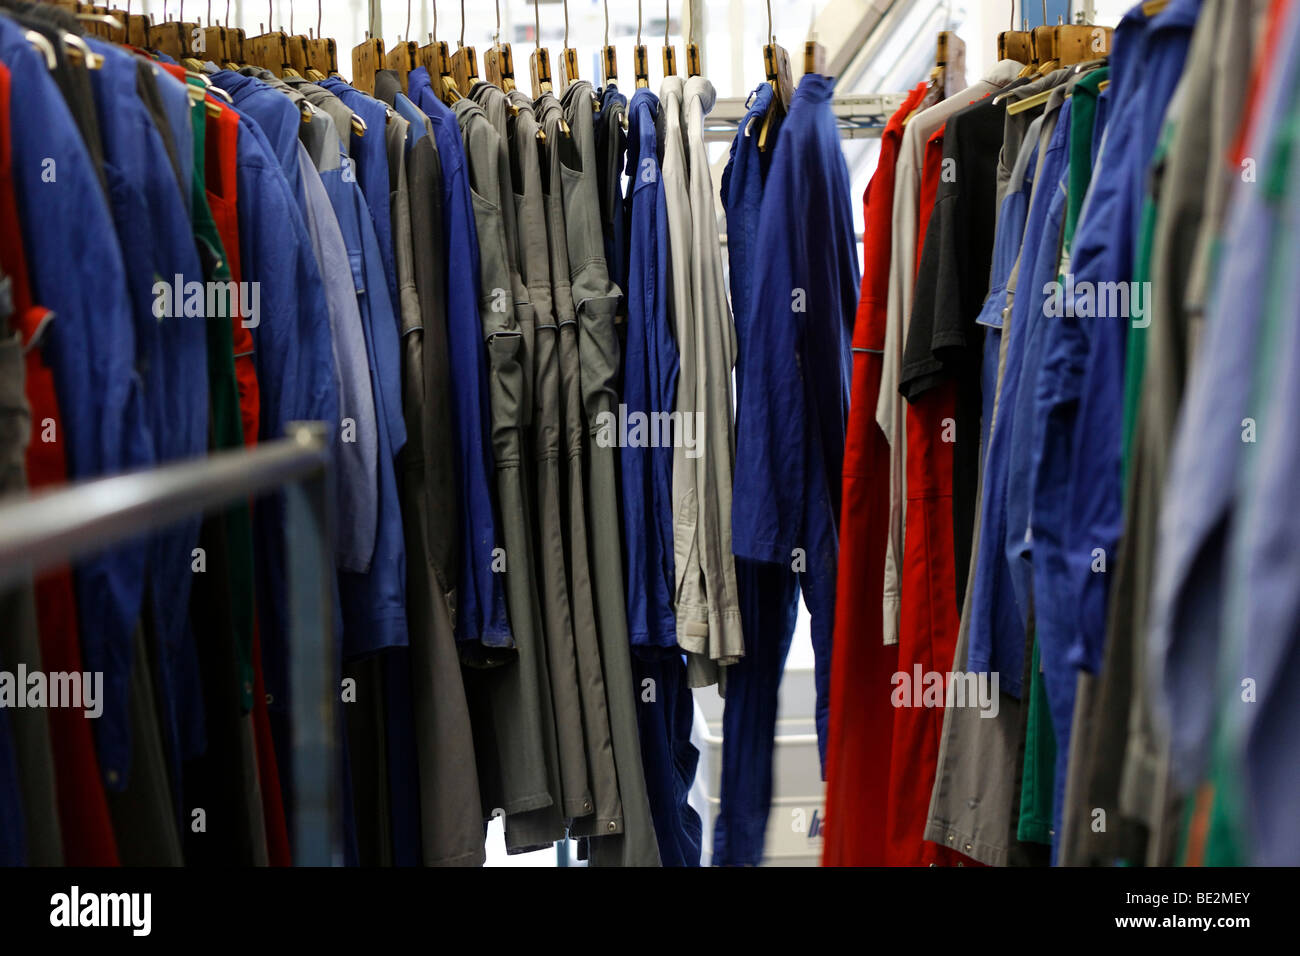 Arrendamientos Bardusch 2, 000 diferentes tipos de ropa de trabajo en todos los colores y tamaños, alquiler uniforme Bardusch & Servicios de lavandería, T Foto de stock